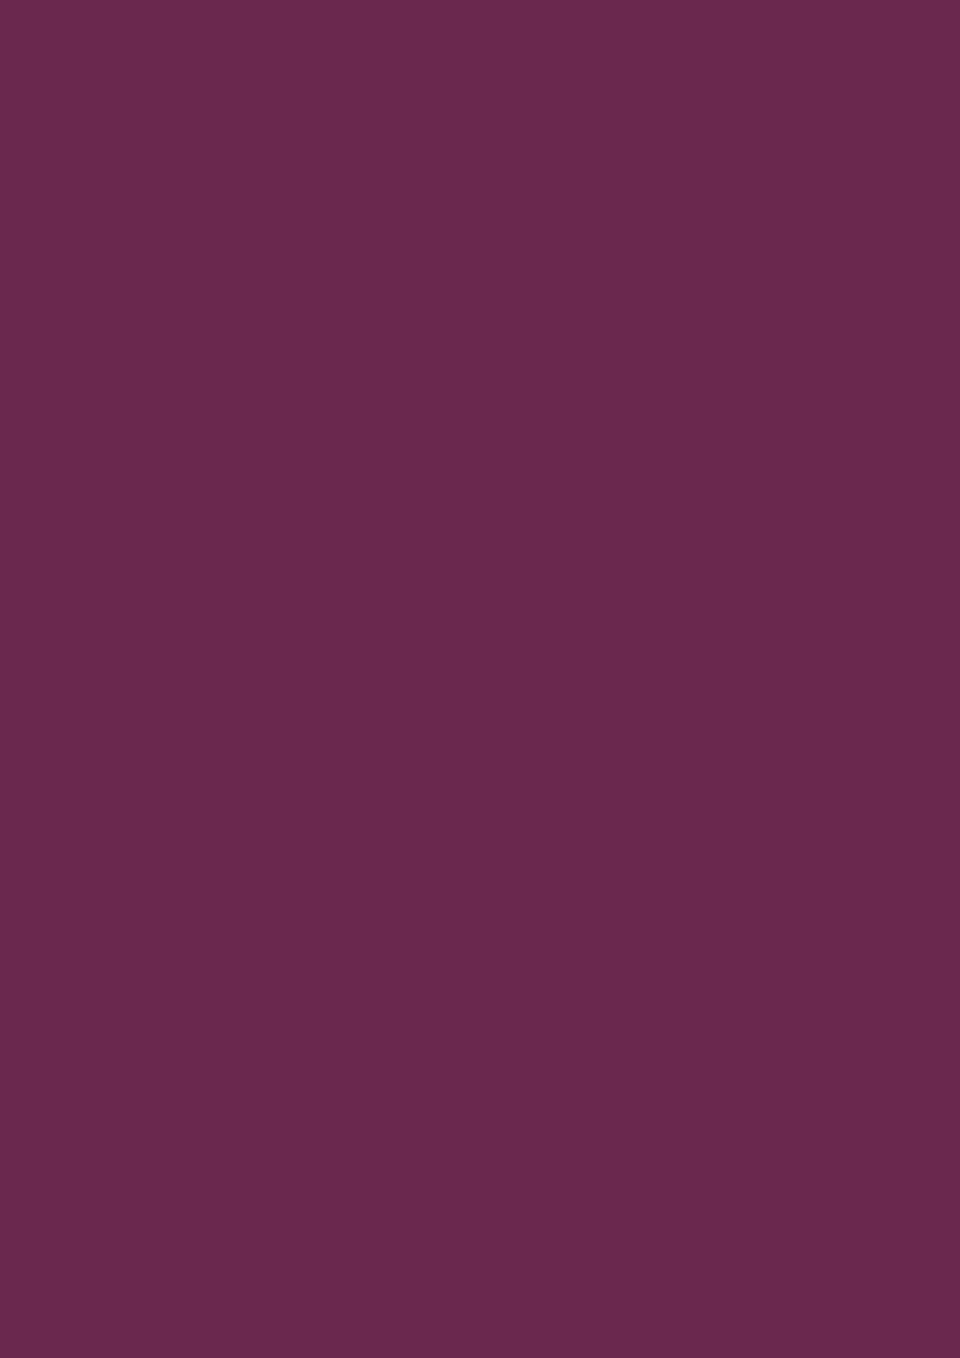 Пленка самоклеящаяся Уни лак Ягодный бордо-фиолет RAL 4004 0673-346 D-C-fix 0.45х2м кресло руководителя twister иск кожа бордо иск кожа